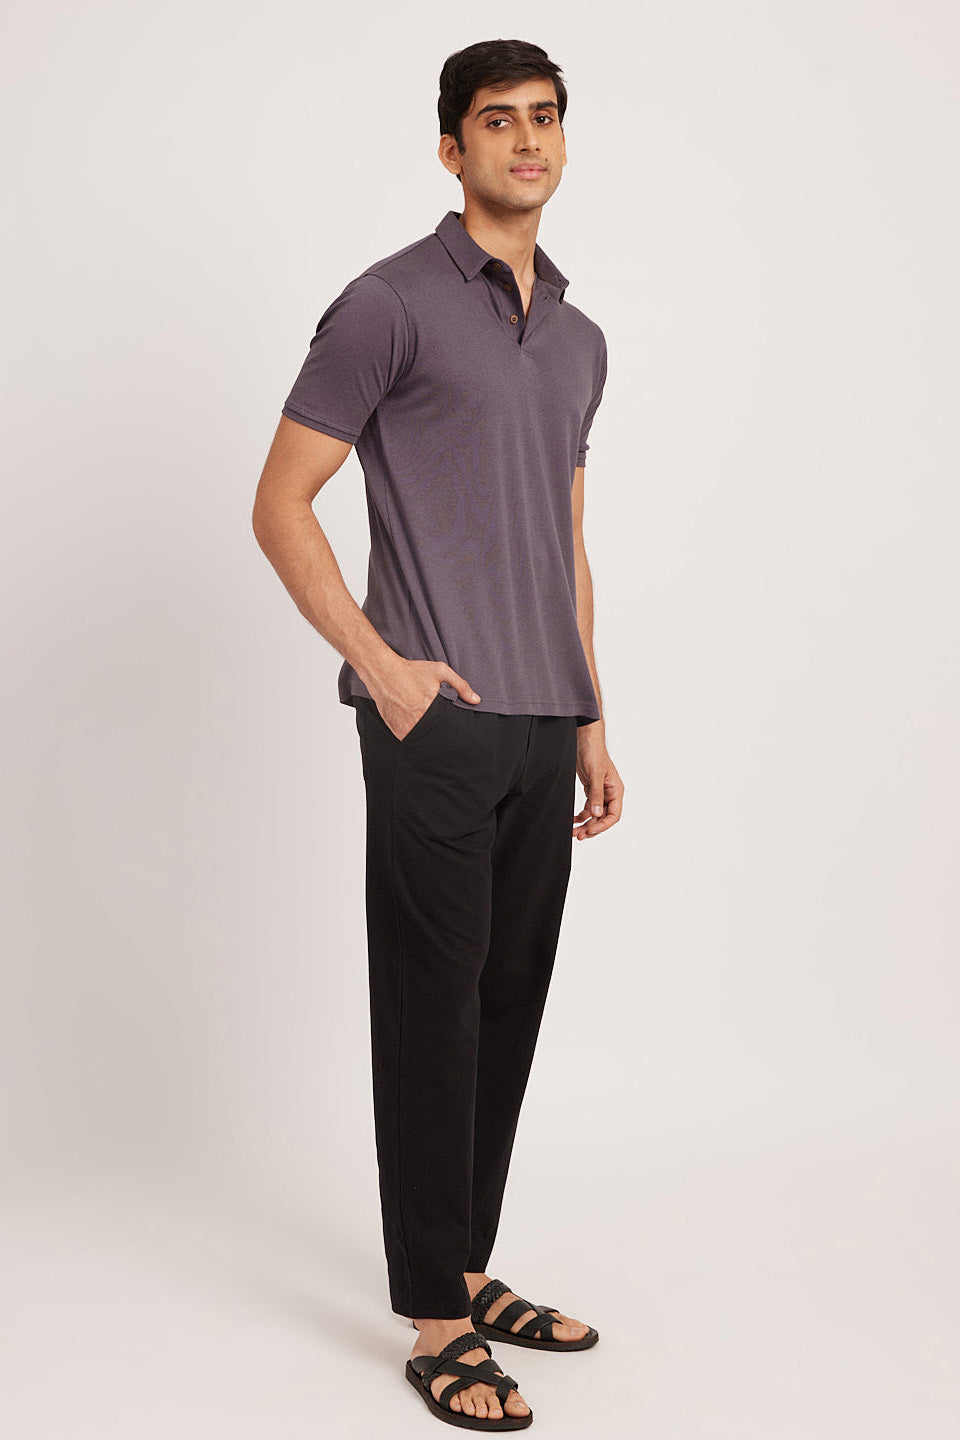 Jet Black Track Pant for Men - Solid & 100% Cotton Regular Fit | JadeBlue